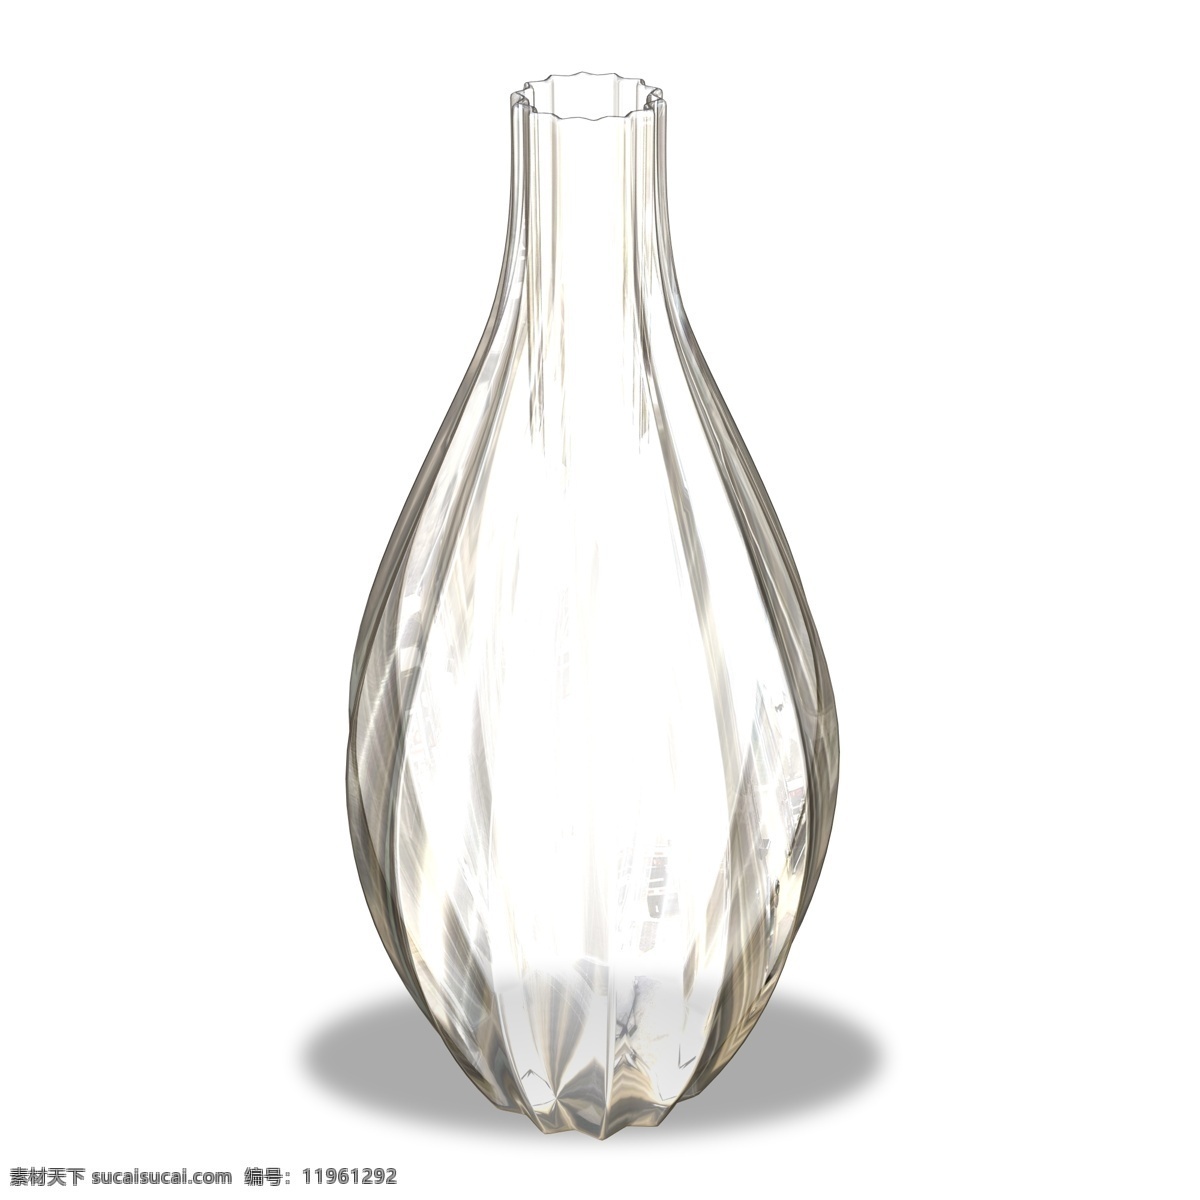 玻璃 容器 高 透 花瓶 透明的 玻璃制品 超白玻 高亮透明 餐具 饮水 餐饮行业 水晶玻璃 钢化玻璃